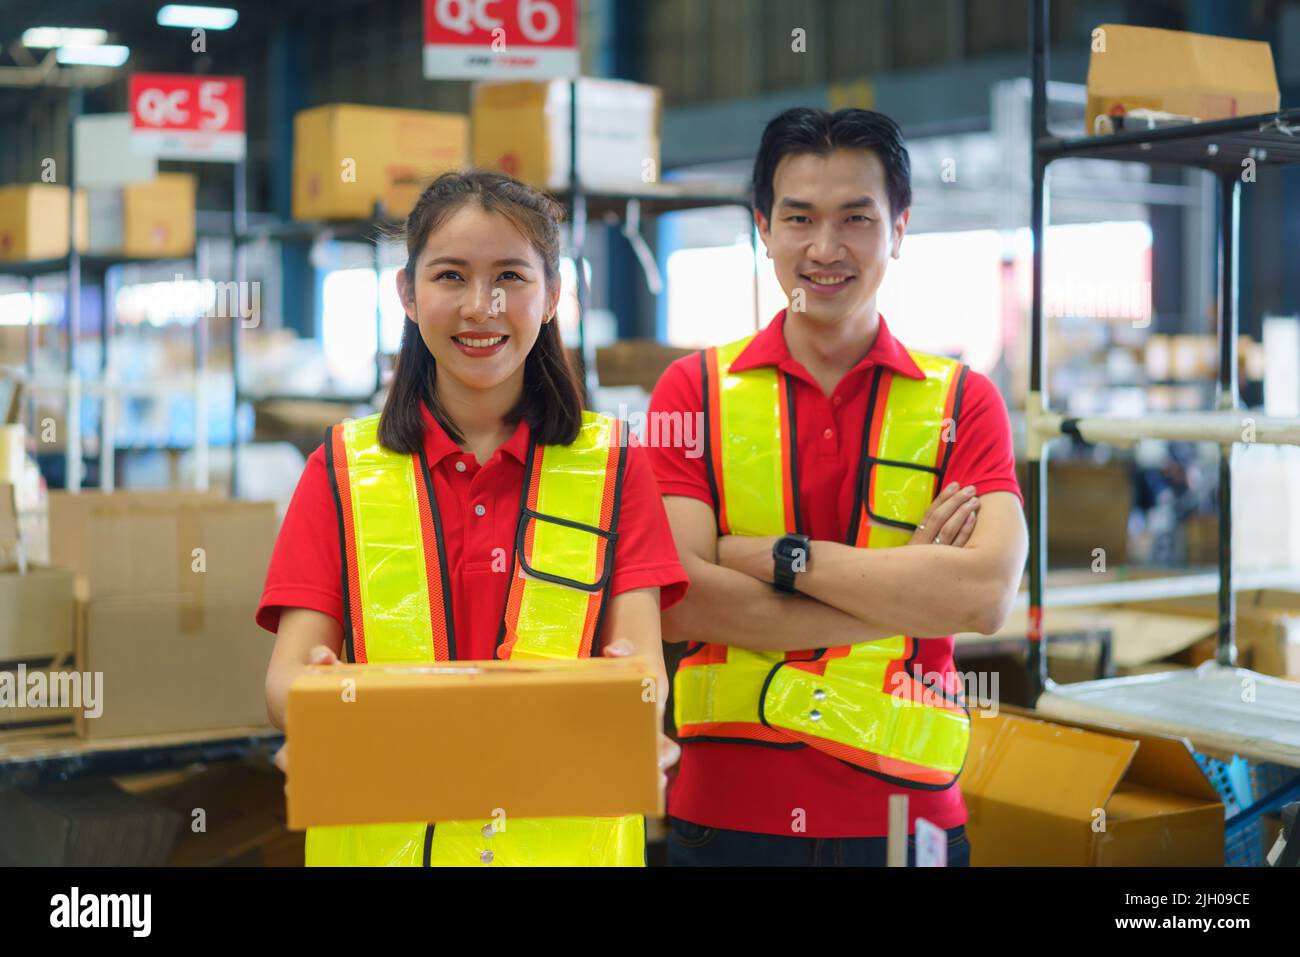 Une jeune femme et un jeune homme tenant un emballage en carton travaillant dans un entrepôt entre des rayonnages et des étagères se préparent pour le service qui déplace les commandes de marchandises. Banque D'Images